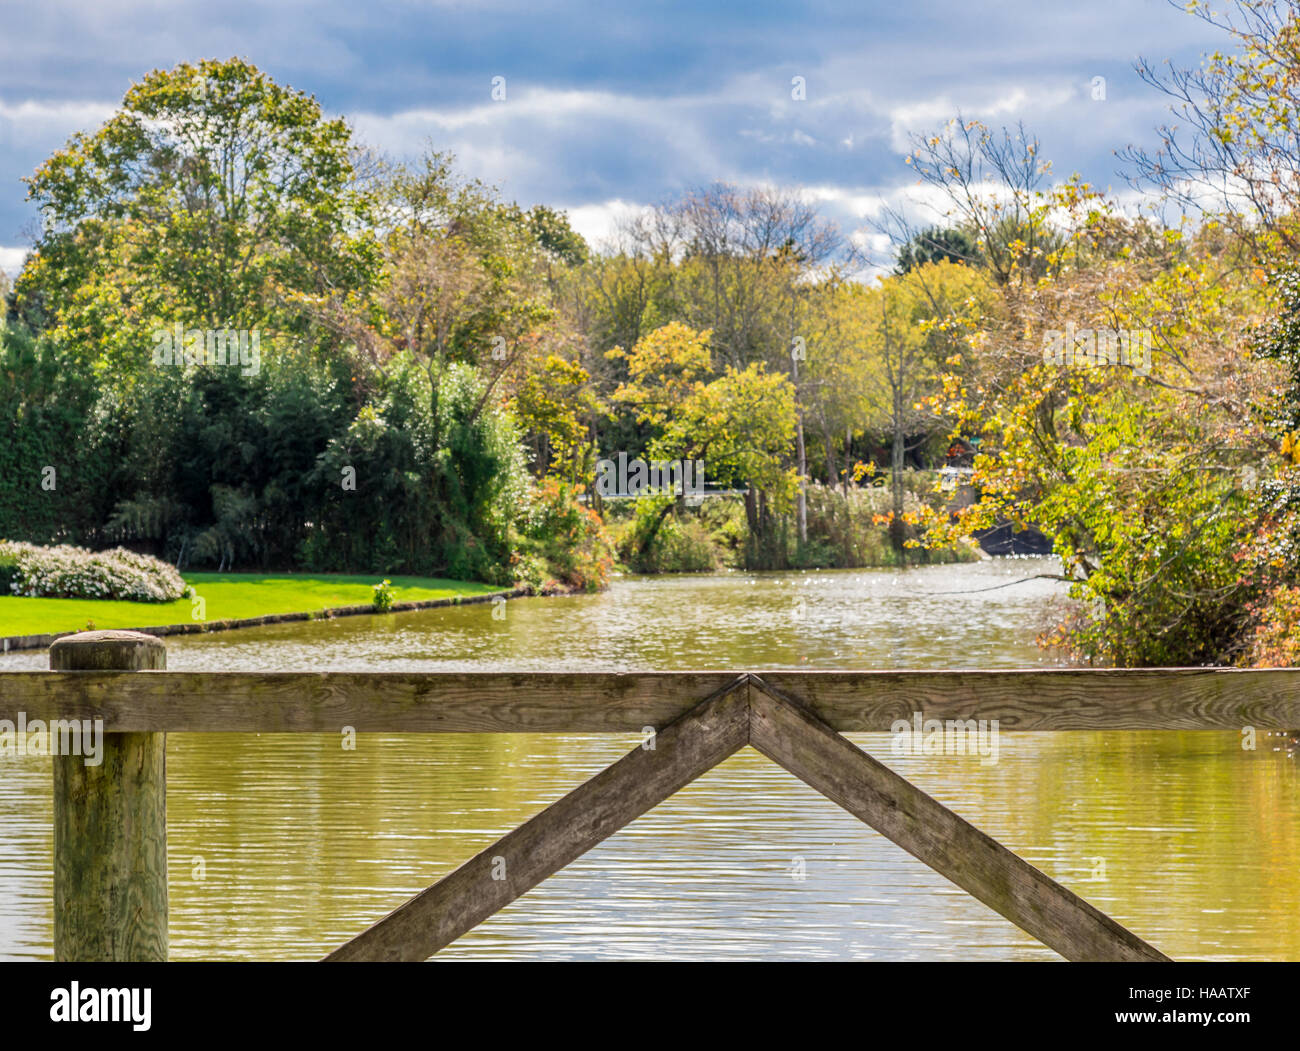 Blick von einer einfachen Brücke auf einen kleinen Körper des Wassers umgeben von Bäumen und Rasen Stockfoto